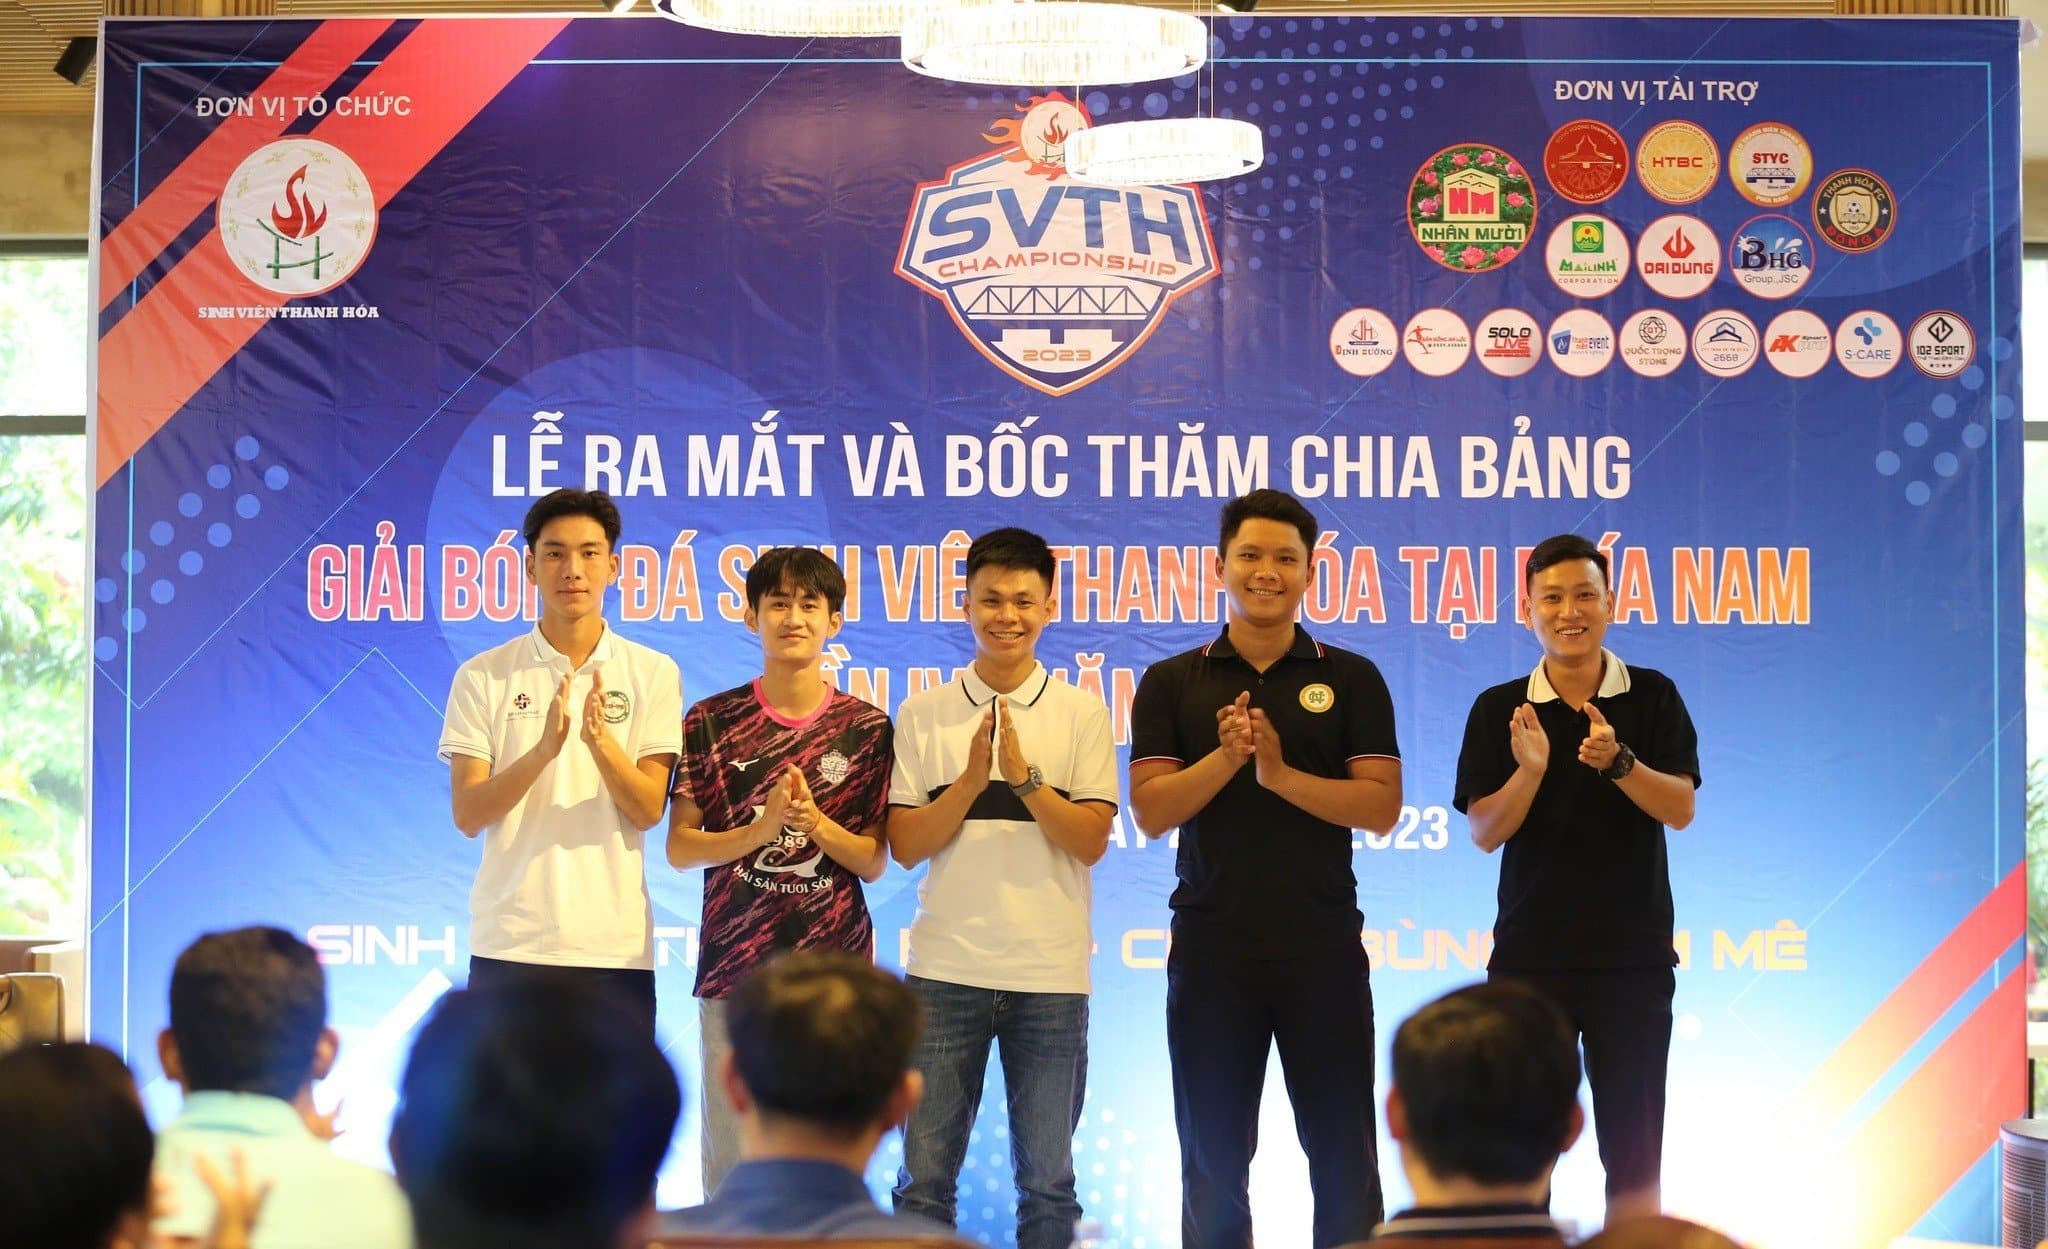 You are currently viewing Lễ ra mắt và bốc thăm chia bảng giải bóng đá sinh viên Thanh Hóa tại phía Nam lần thứ IV- 2023